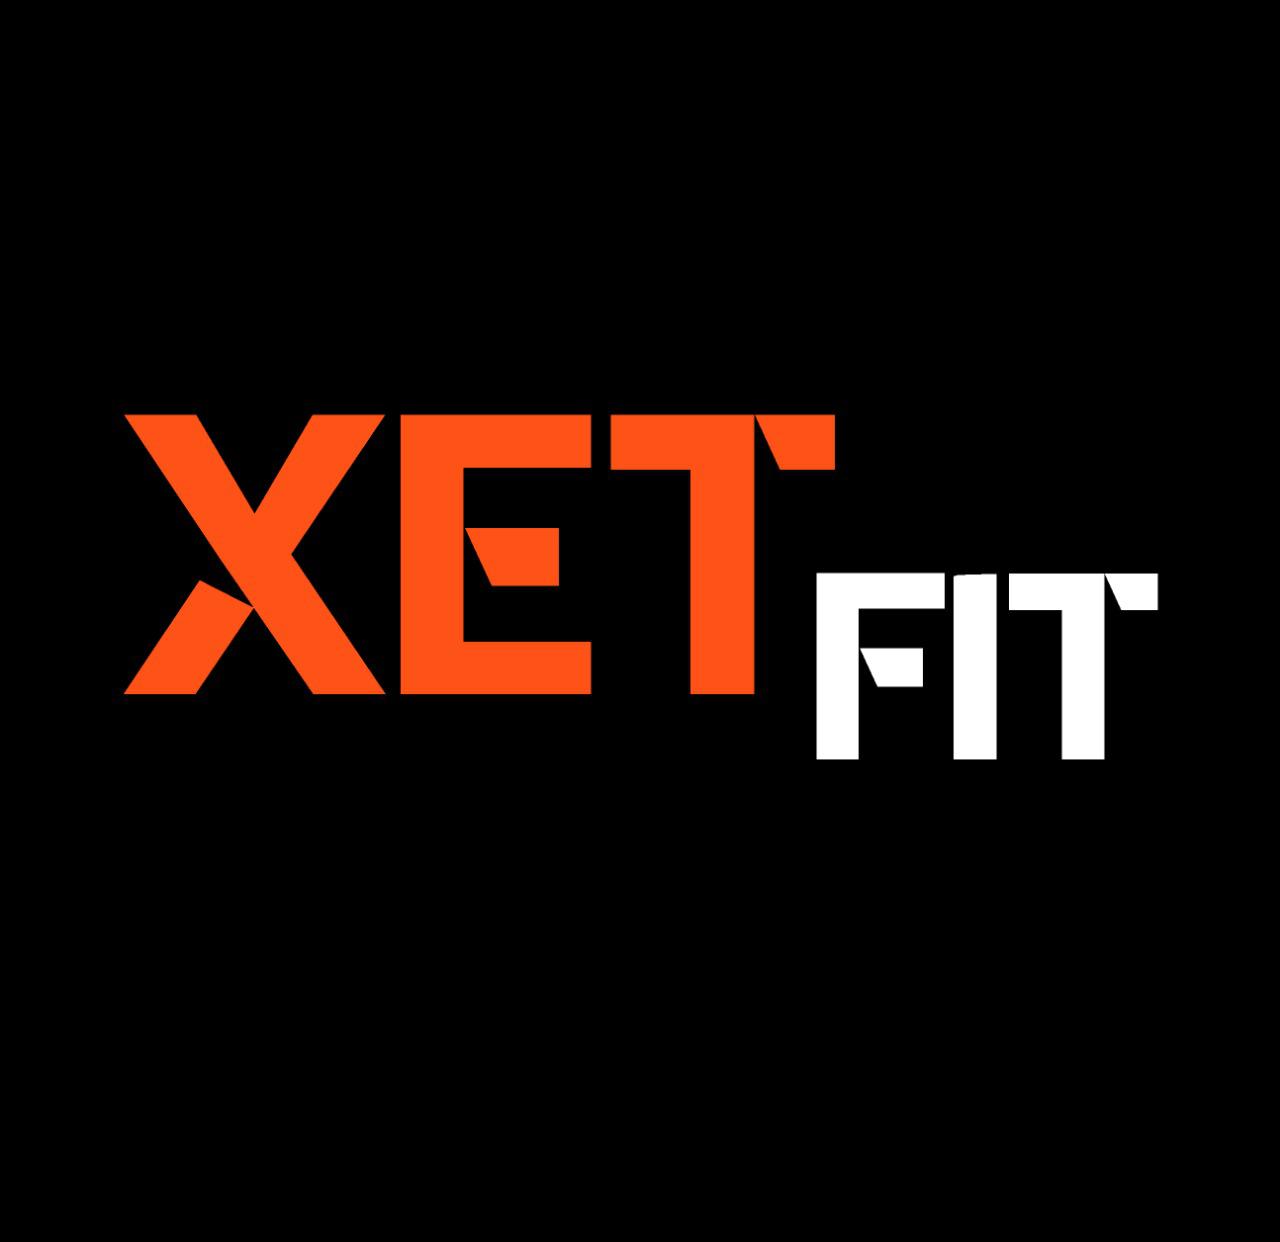 XETFIT Logo